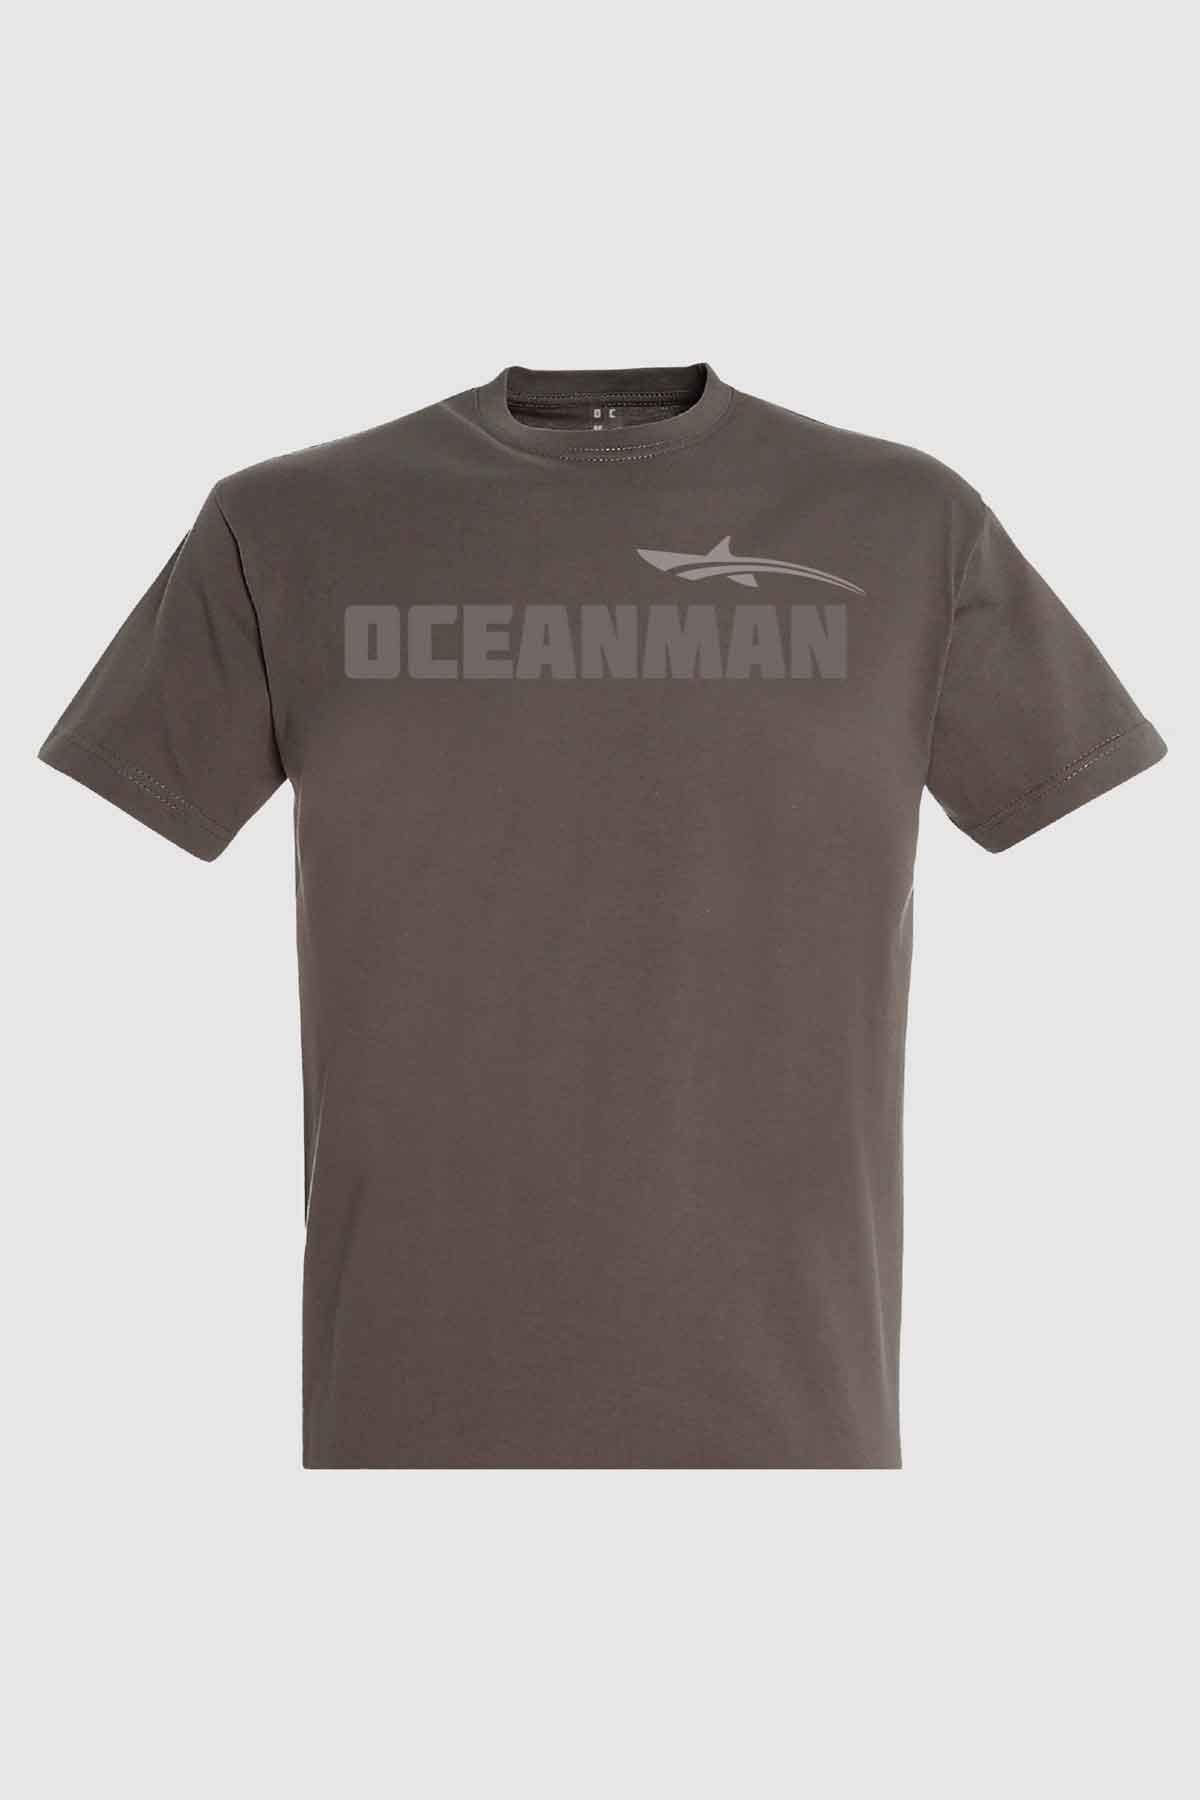 brown oceanman t shirt